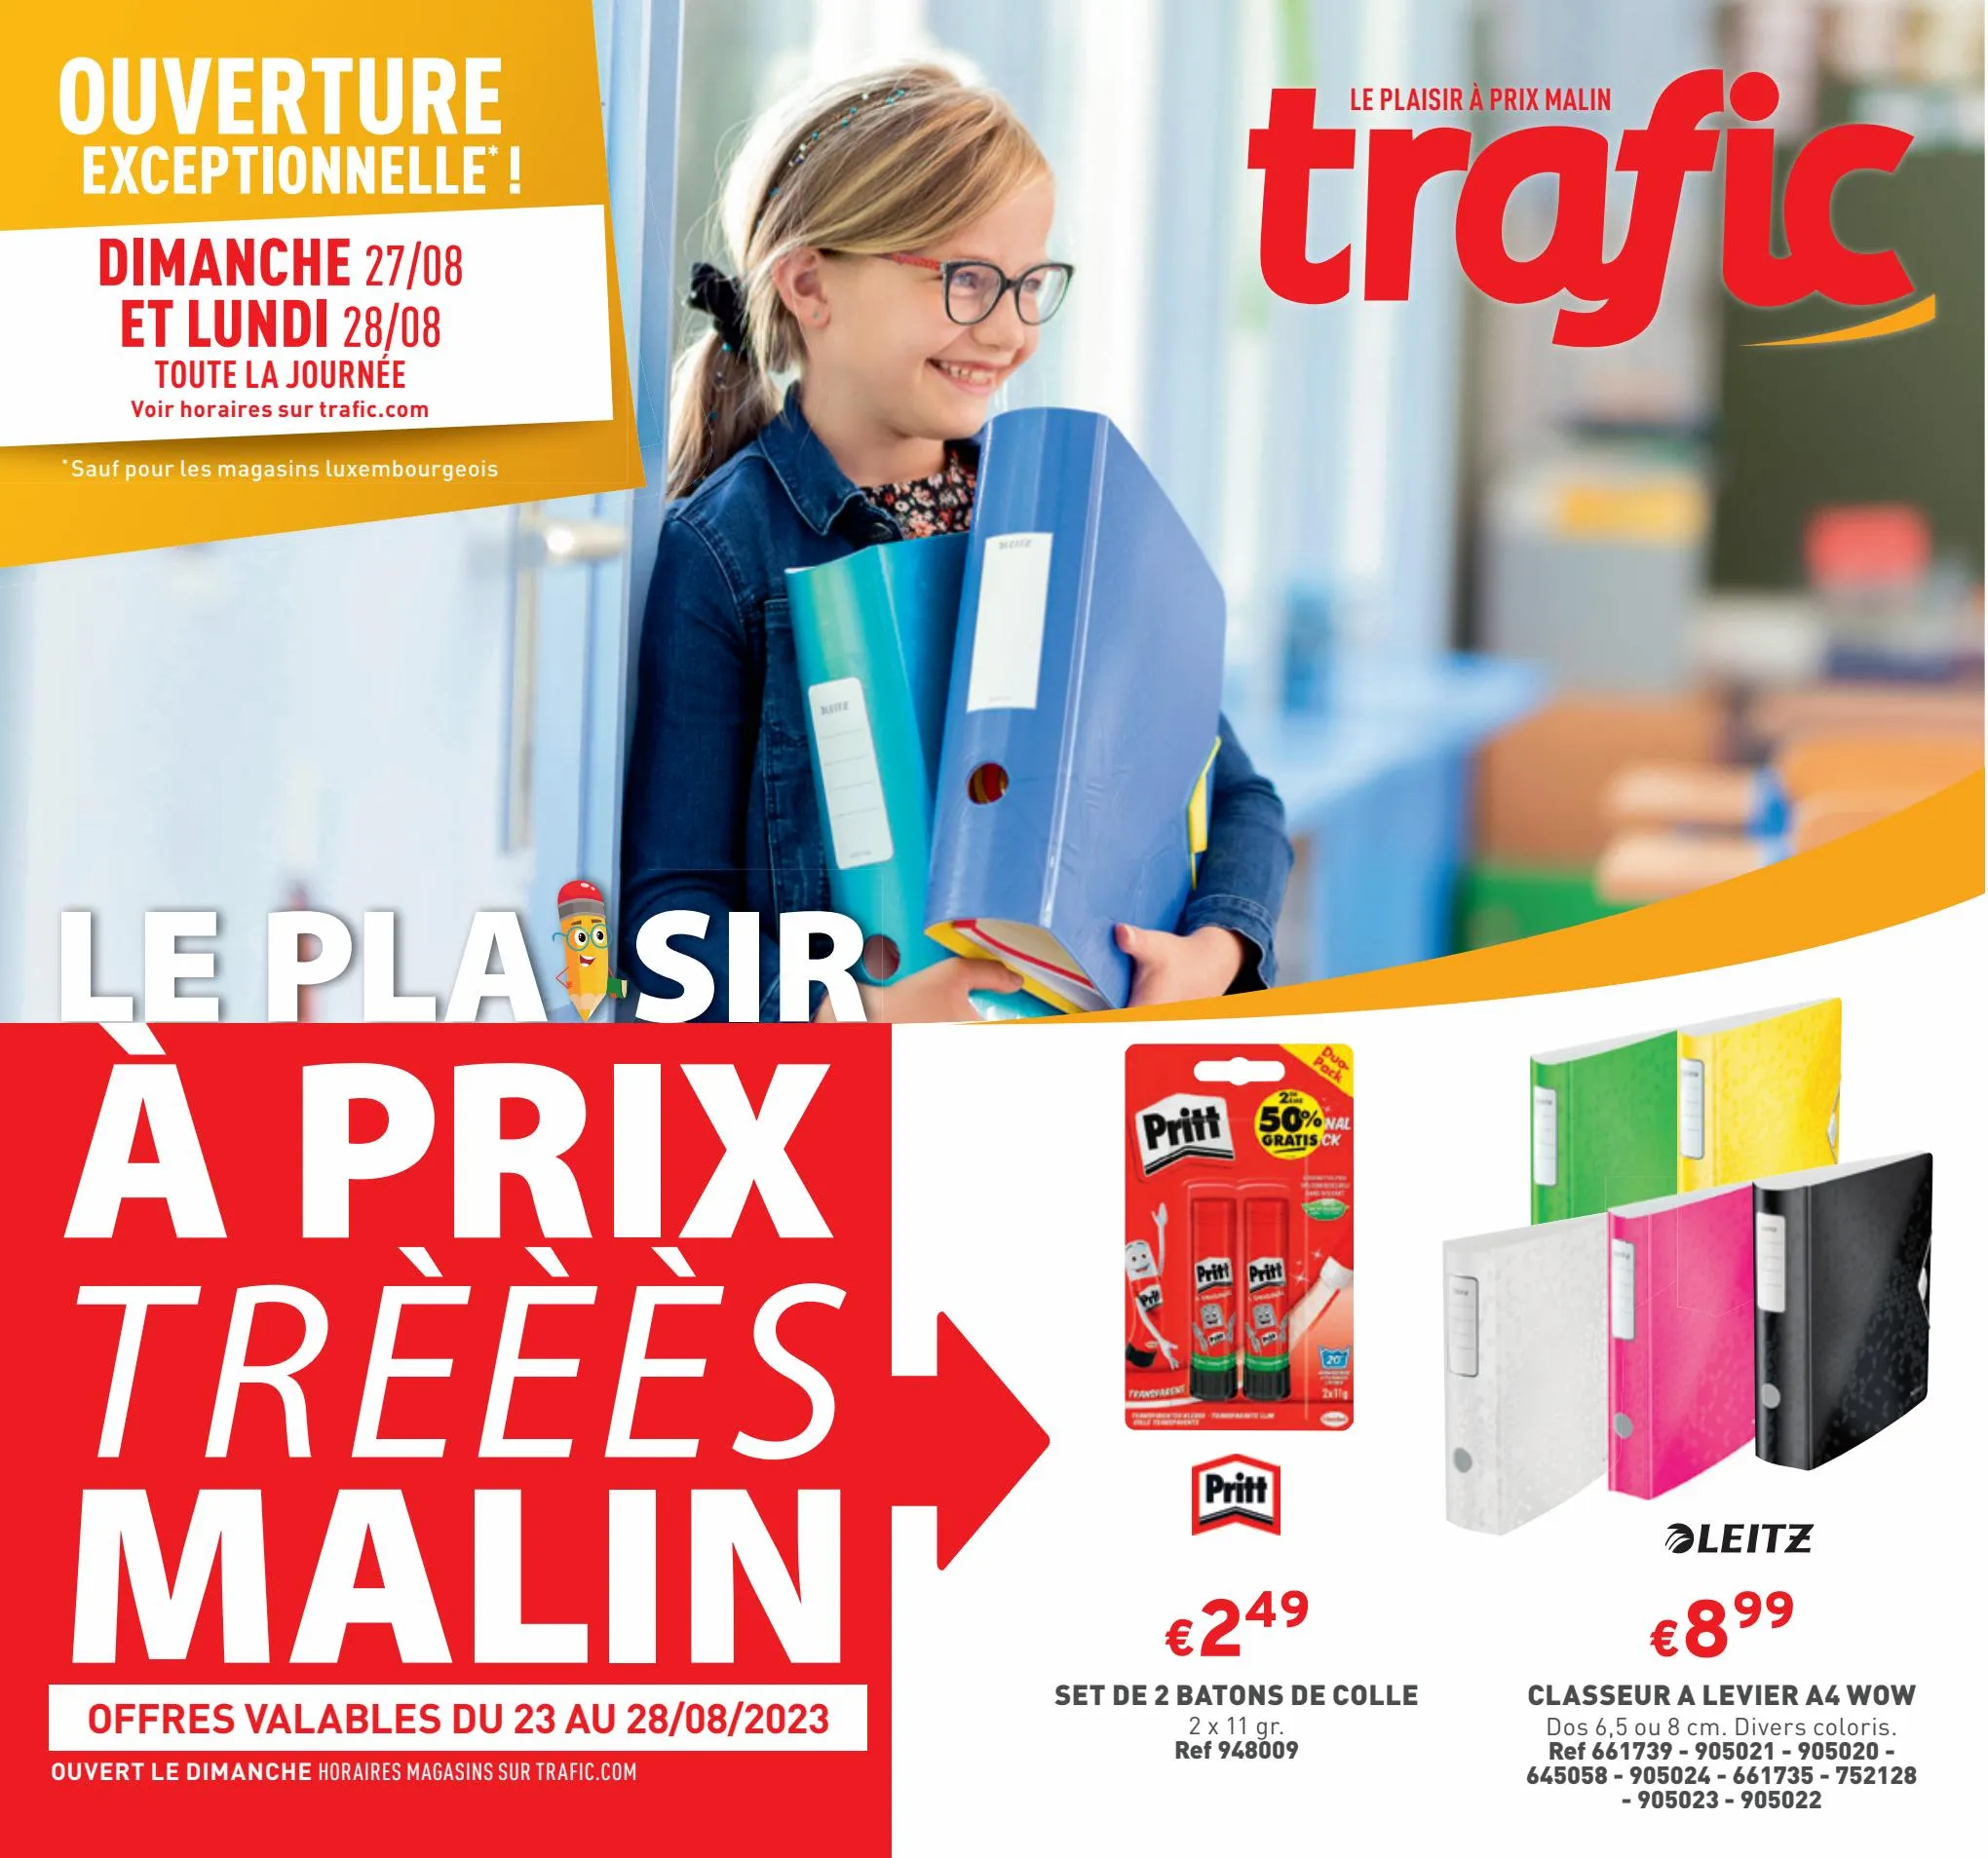 Catalogue Le plaisir à prix trèèèès malin, page 00001